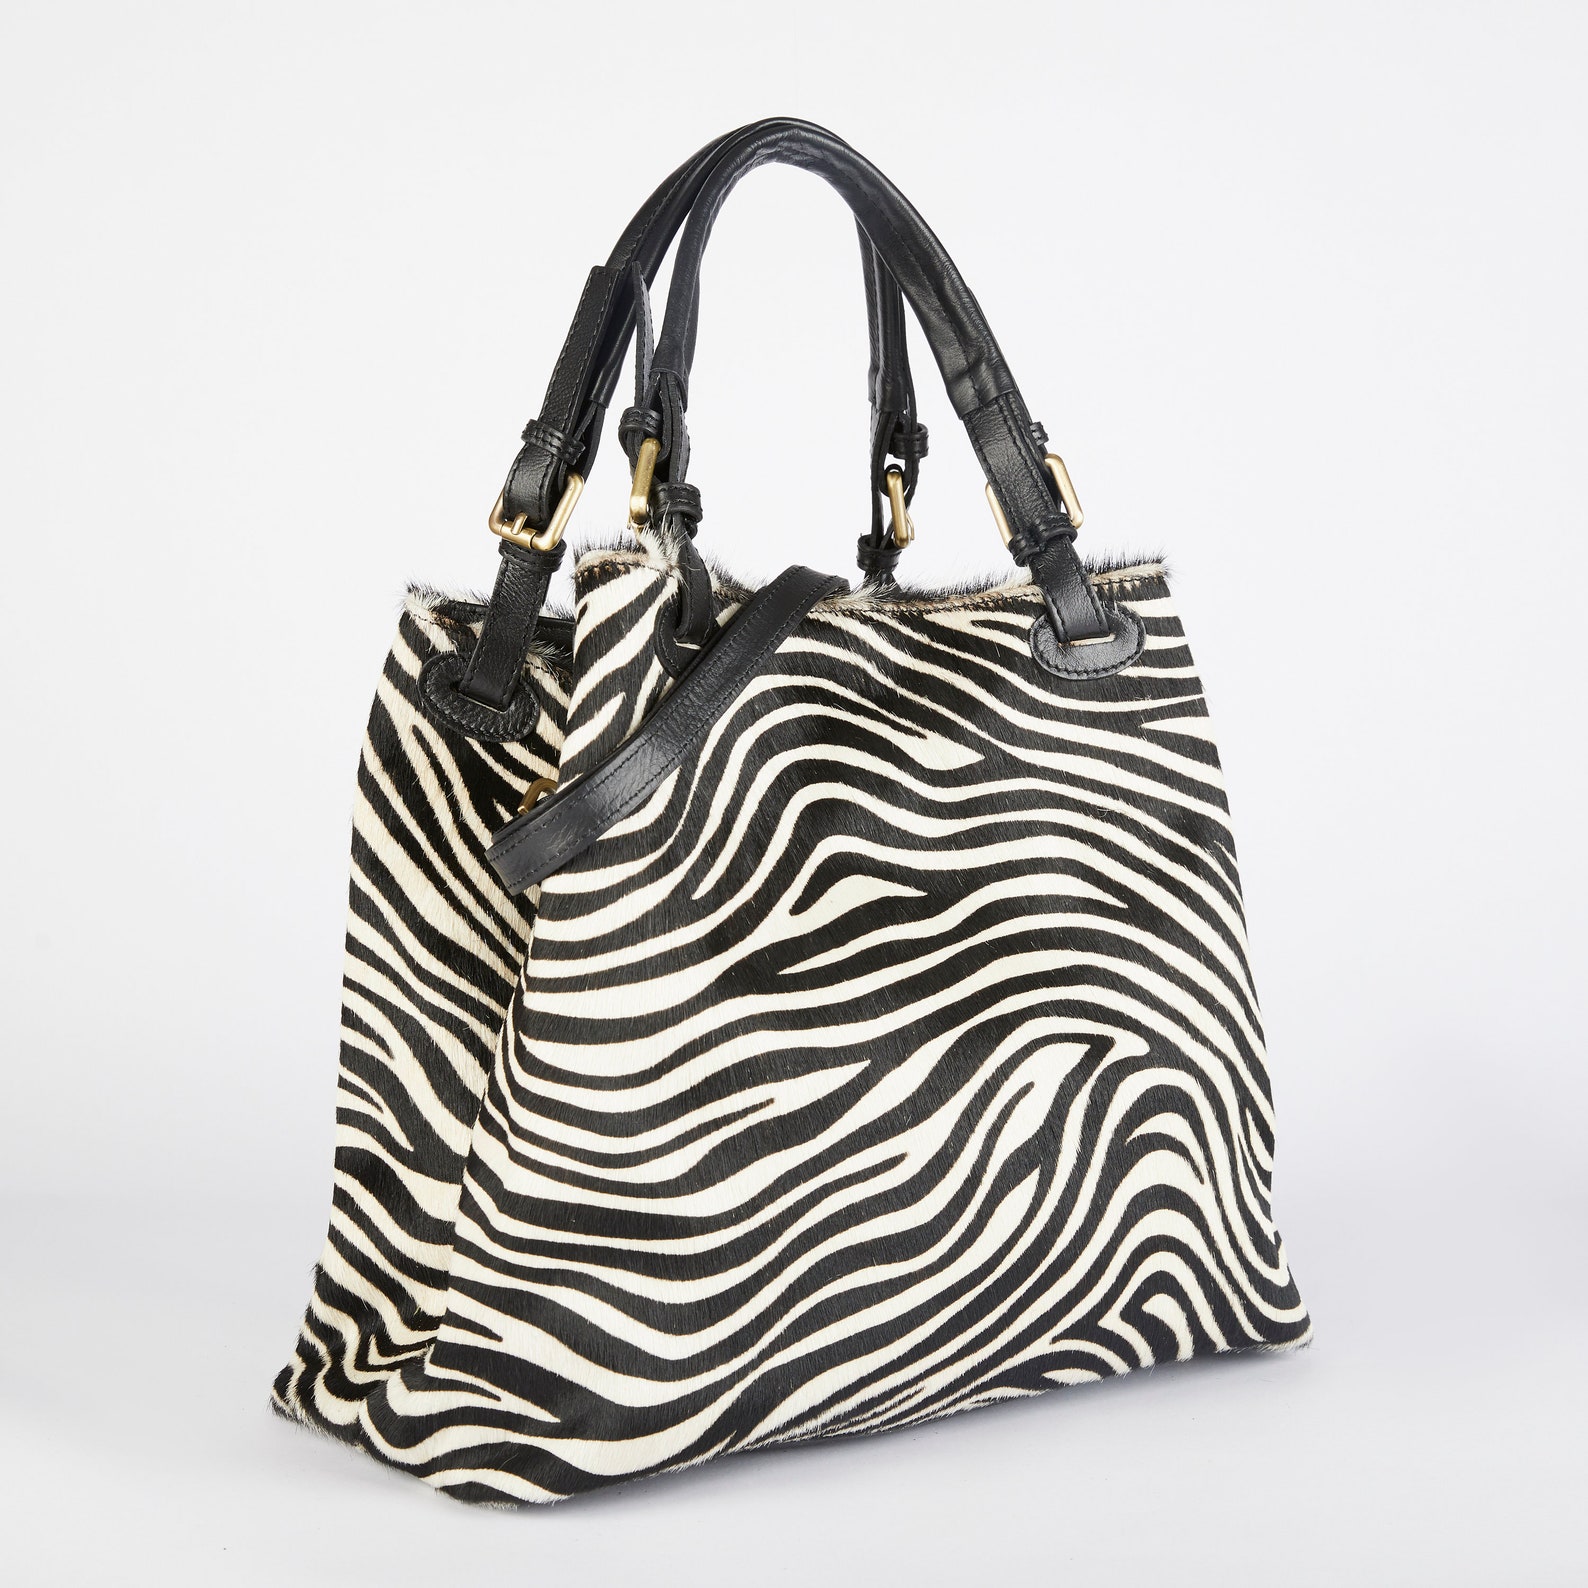 Zebra Print Tote Bag / Zebra Leather Bag / Zebra Crossbody Bag - Etsy